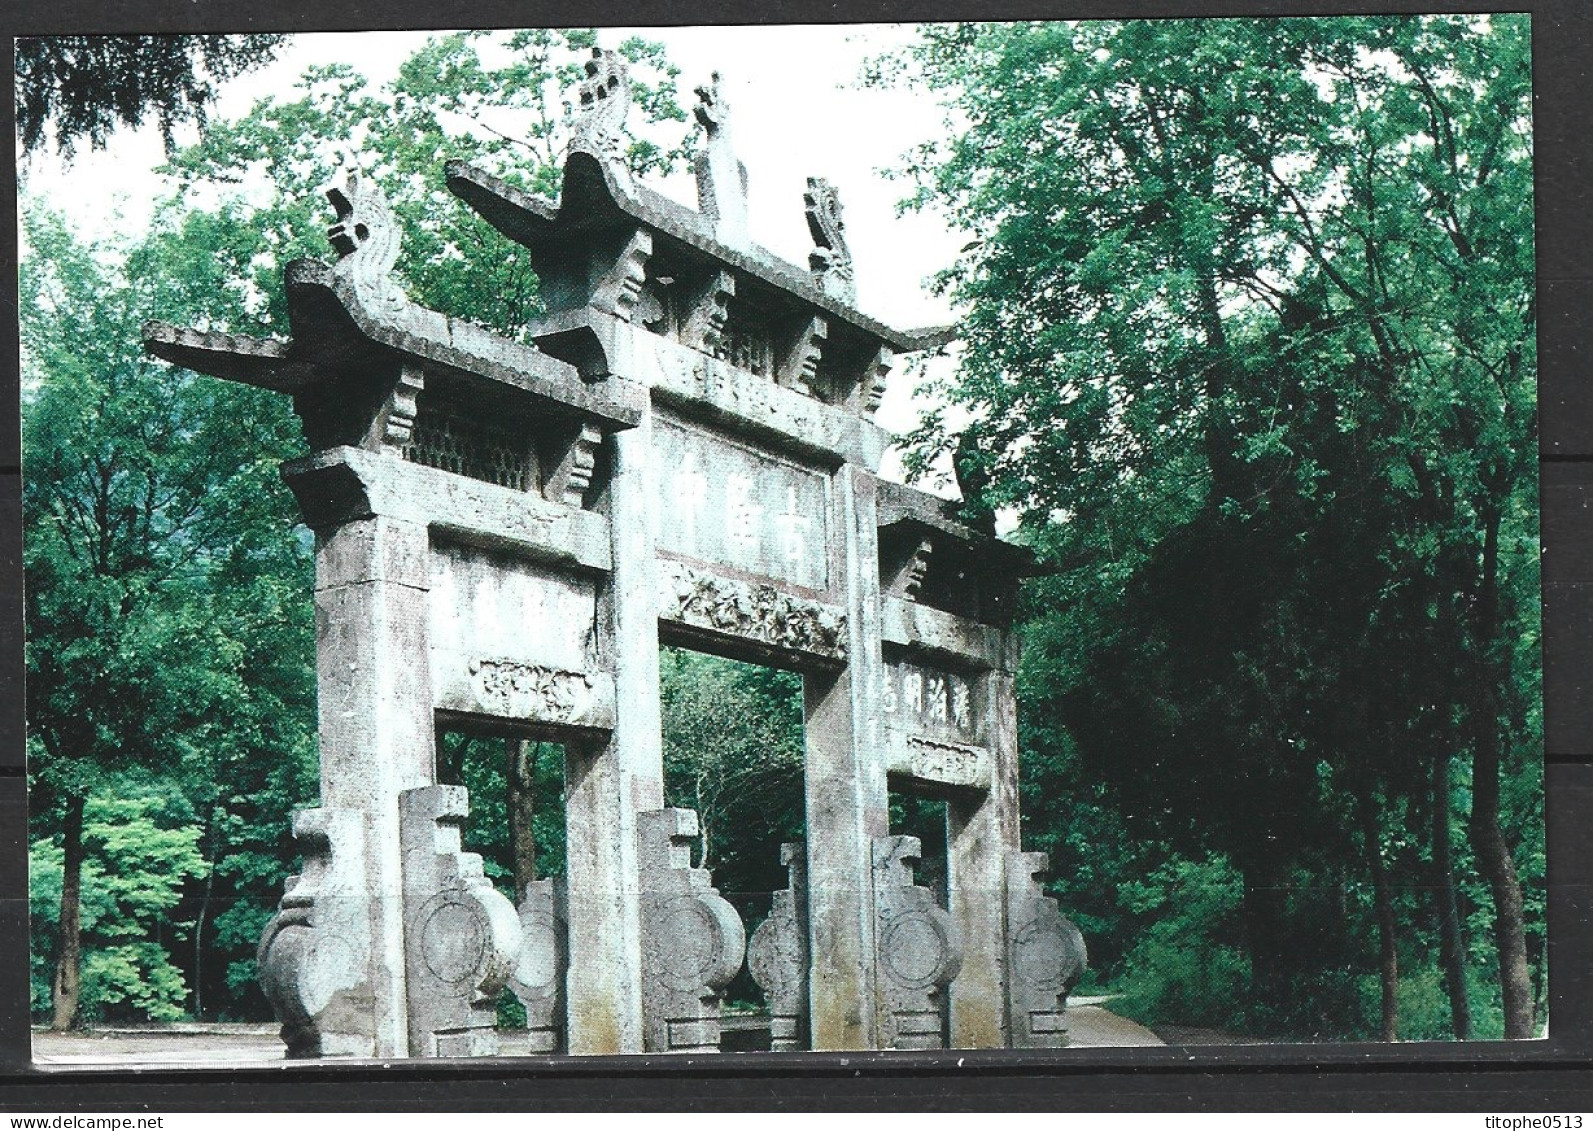 CHINE. 6 Cartes postales pré-timbrées de 1994. Hubei.